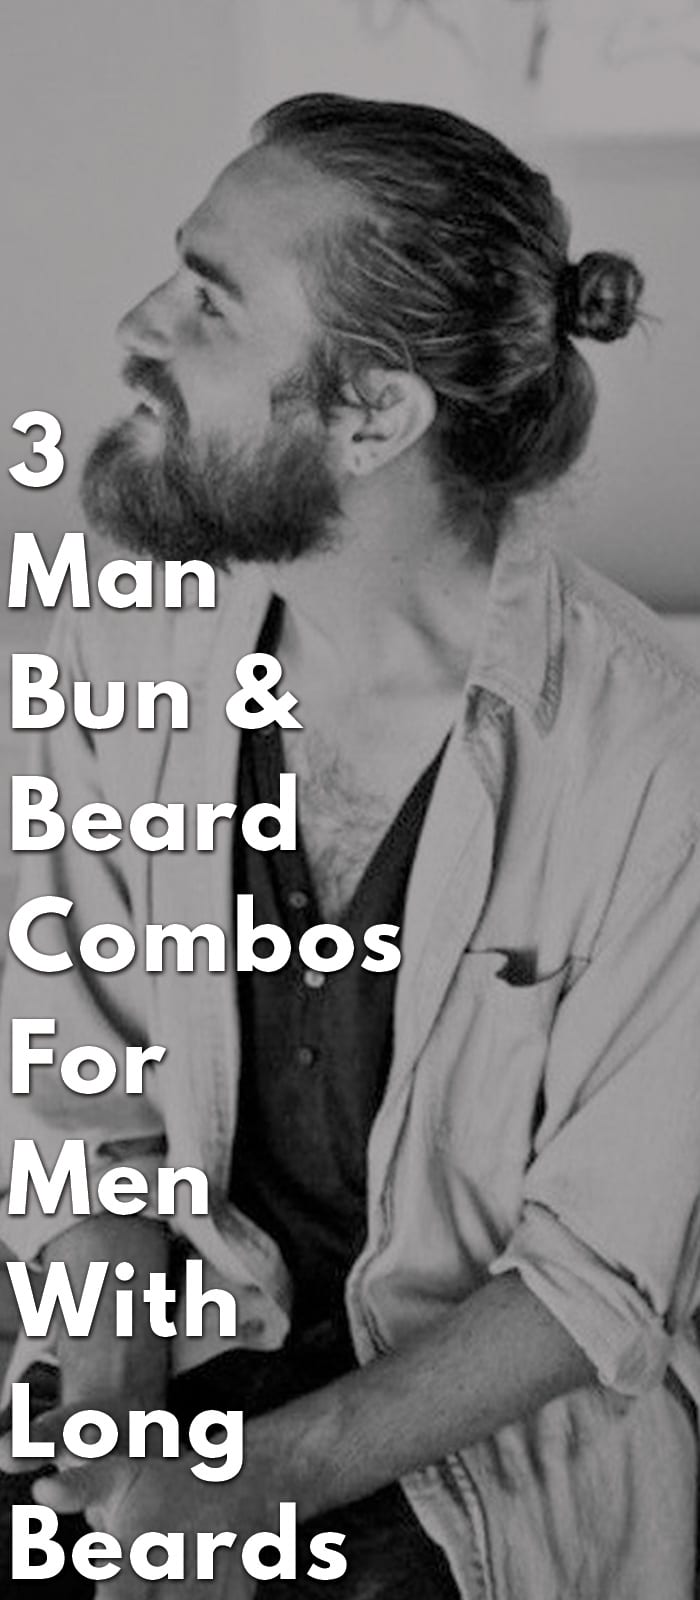 3-Man-Bun-&-Beard-Combos-For-Men-With-Long-Beards